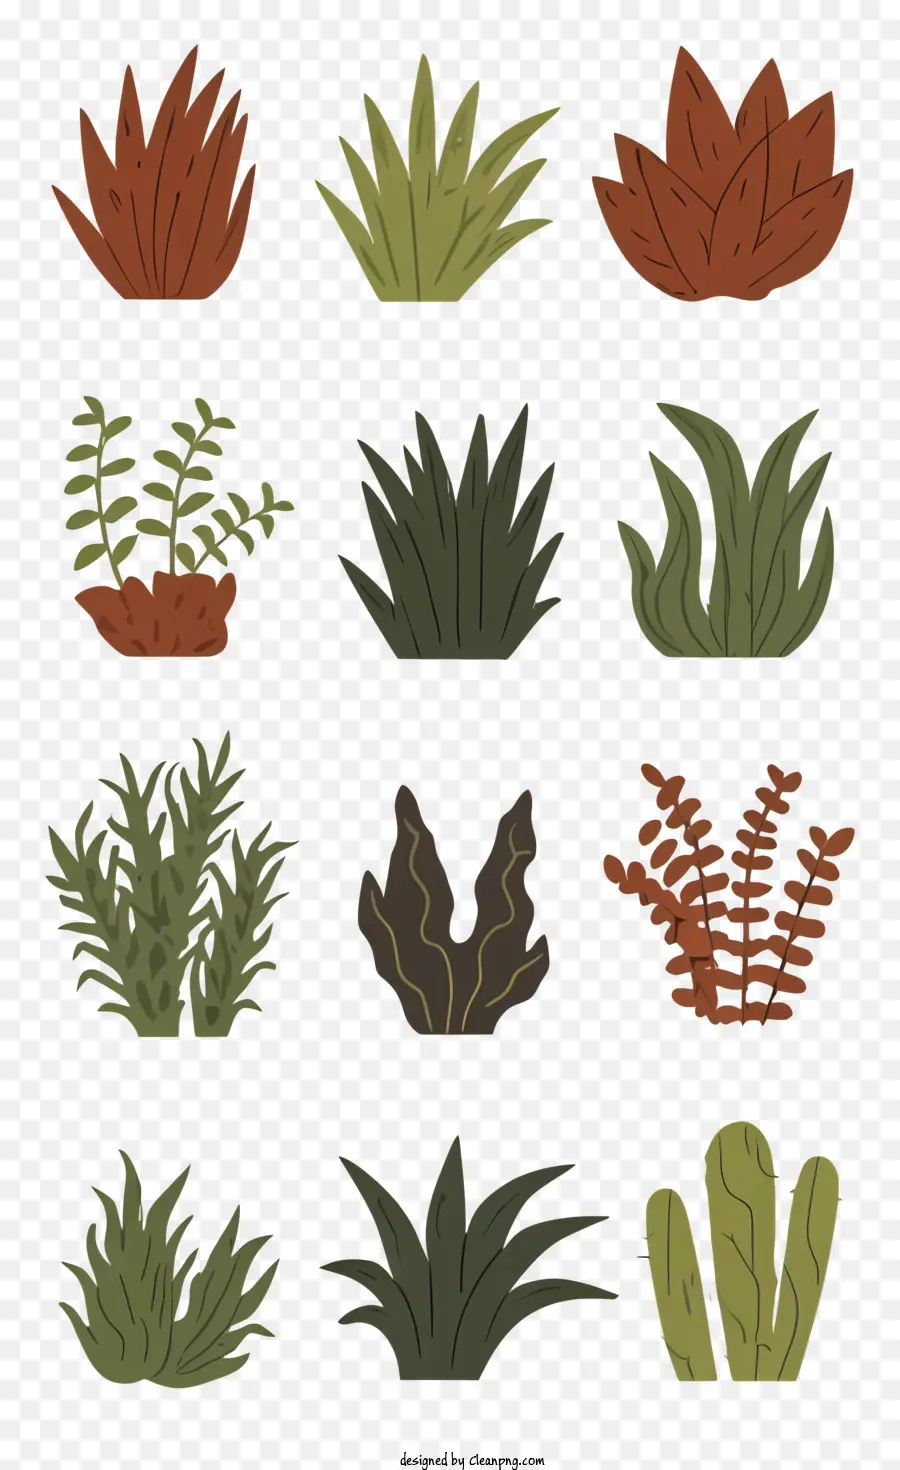 Piante di cartoni animati Cacti Palchi di giardini - Cactus e piante grasse comunemente trovate al chiuso